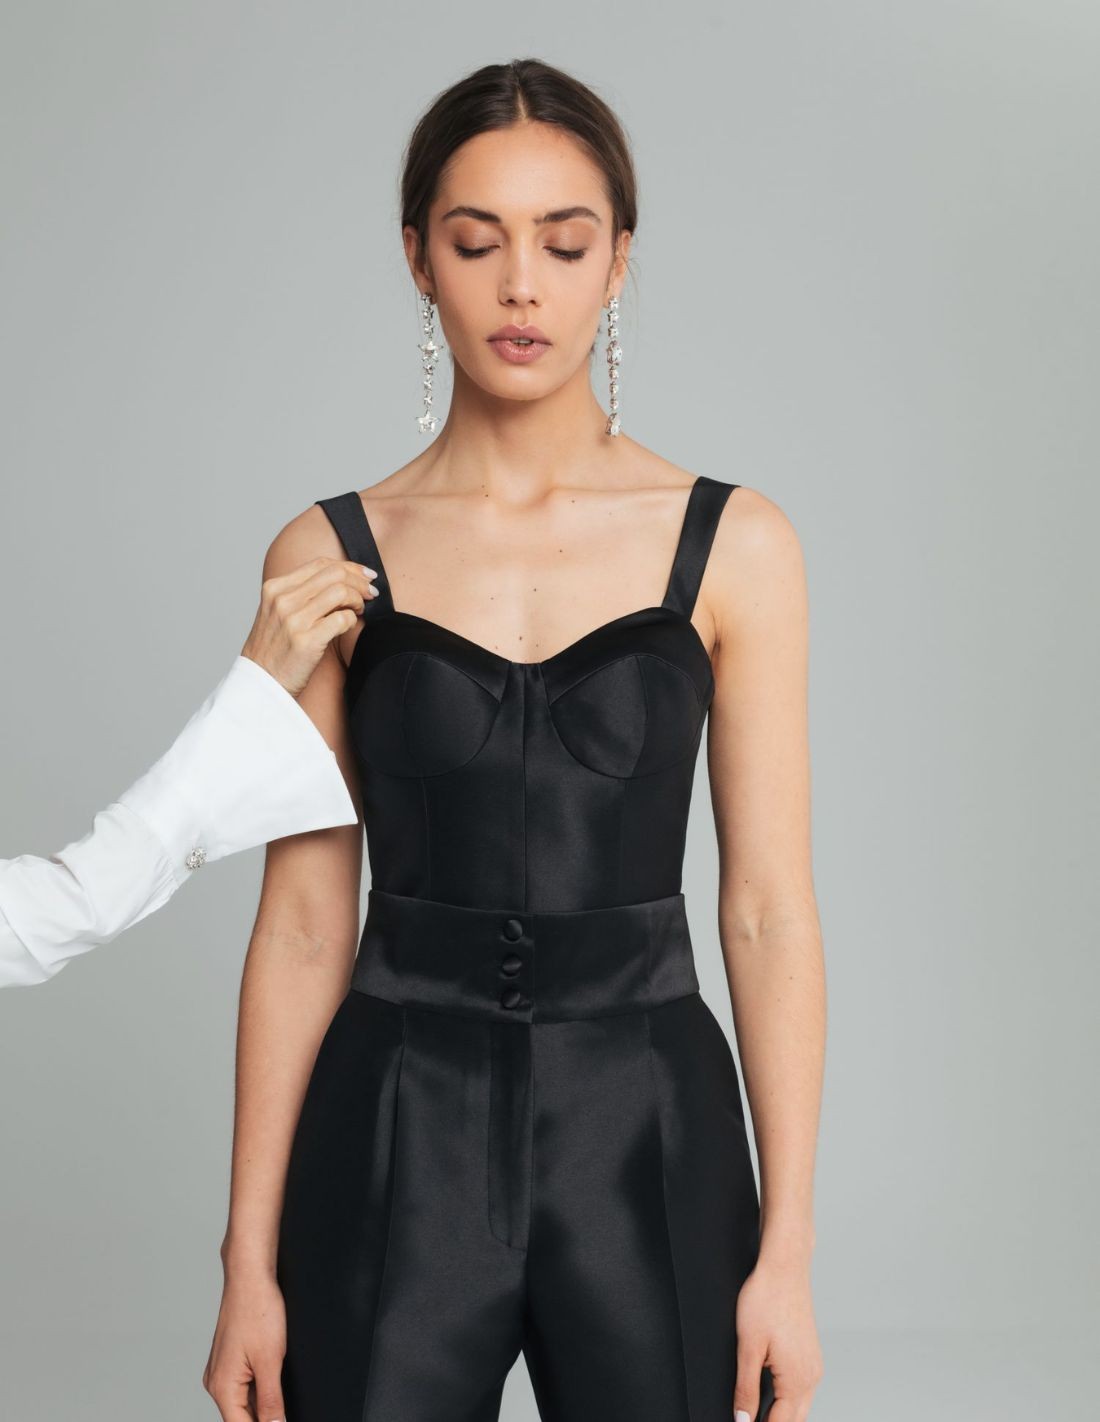 Black corset top for parties